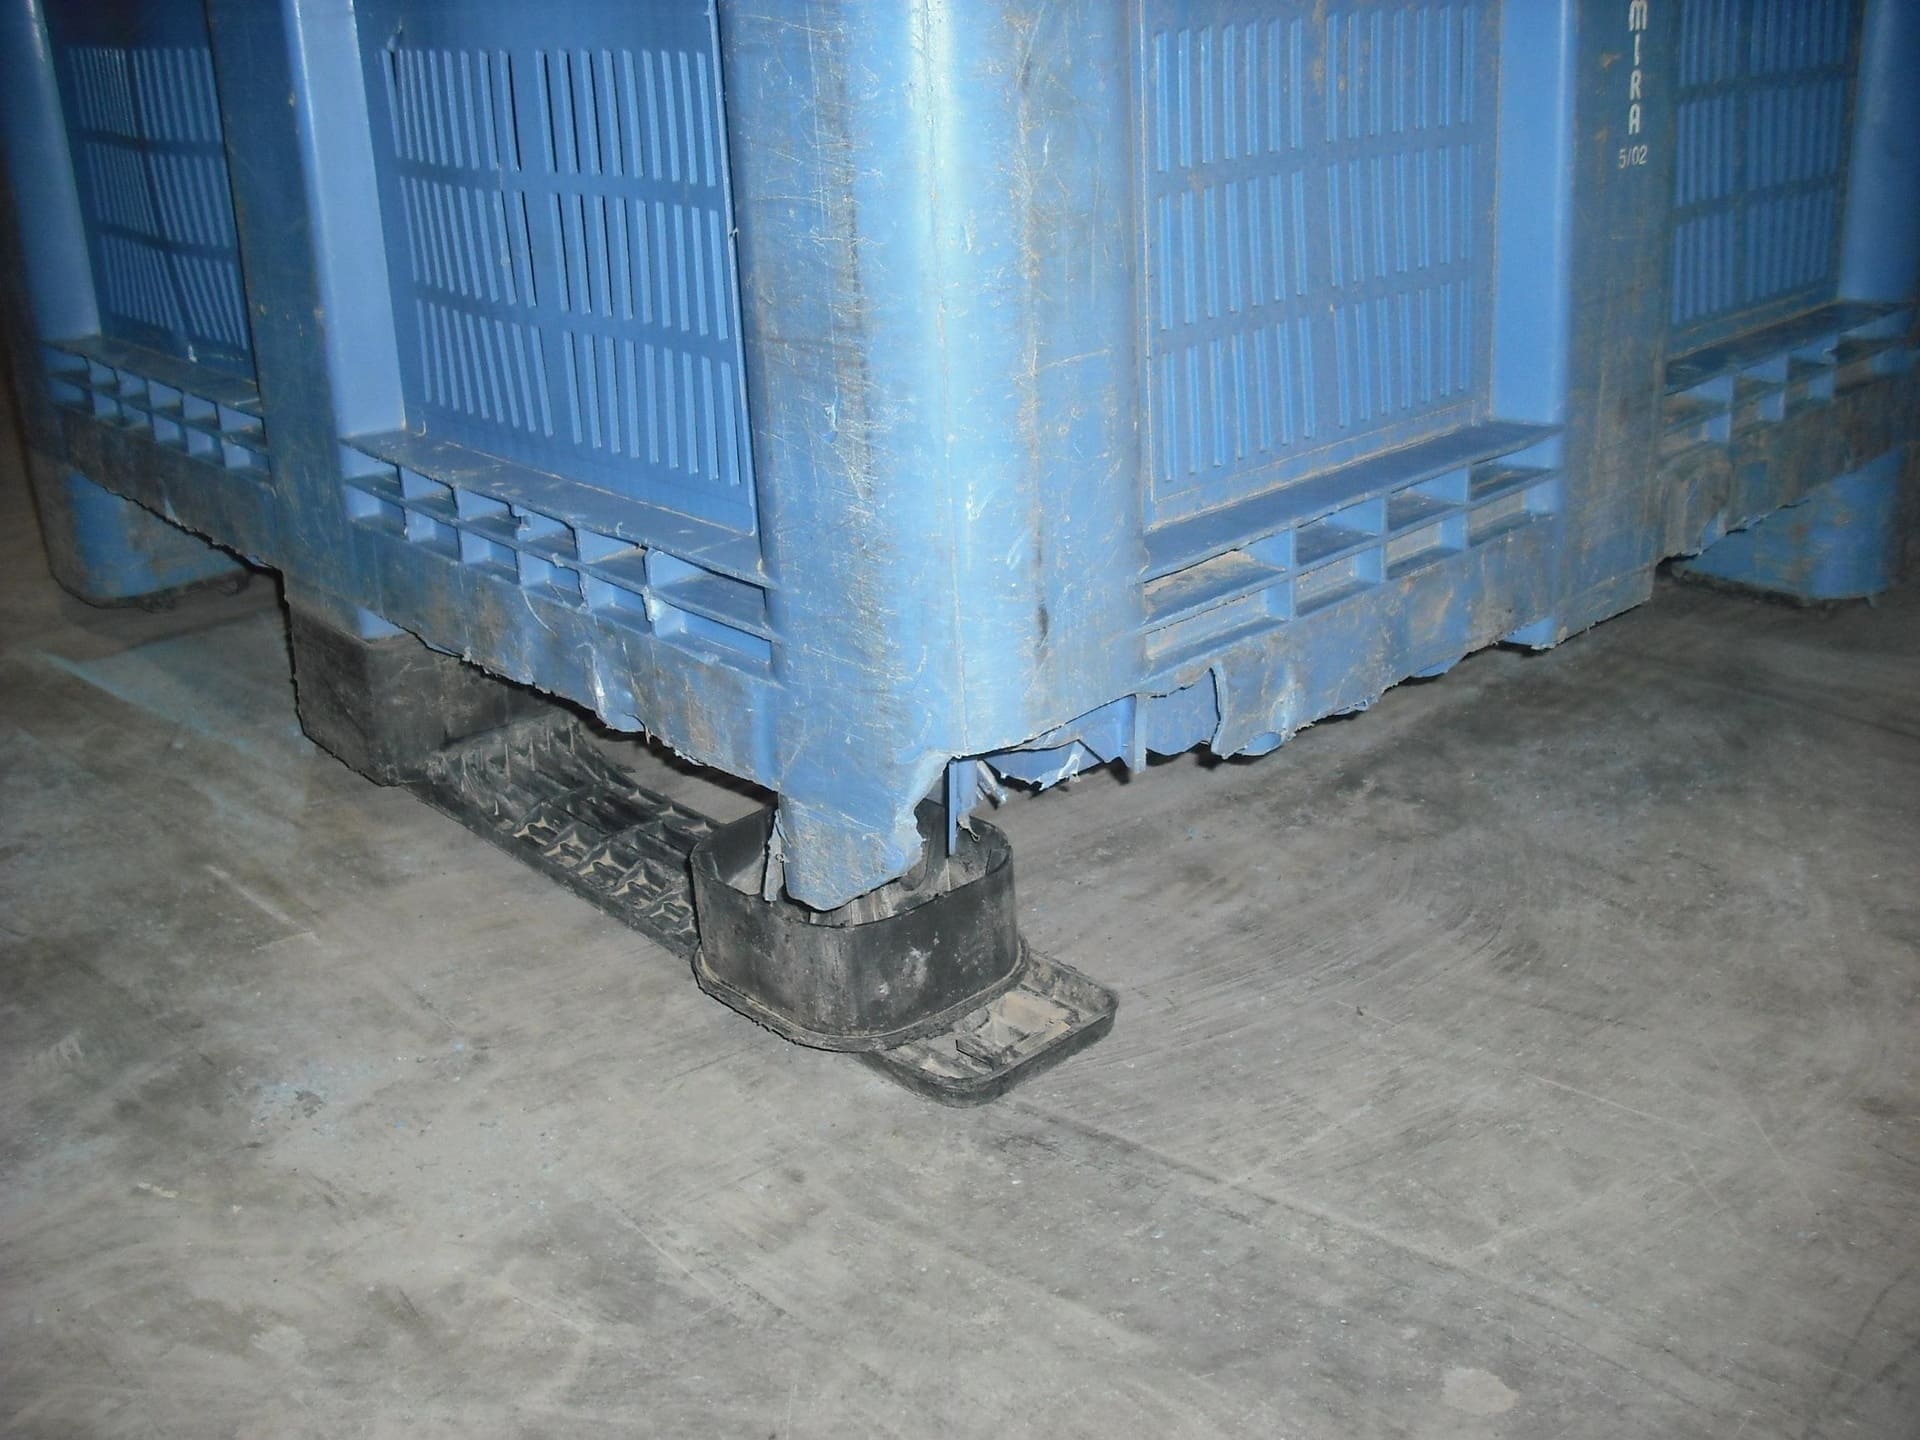 Box de palot de plástico pendiente de reparación con el servicio de reparación de palots de mundobox.